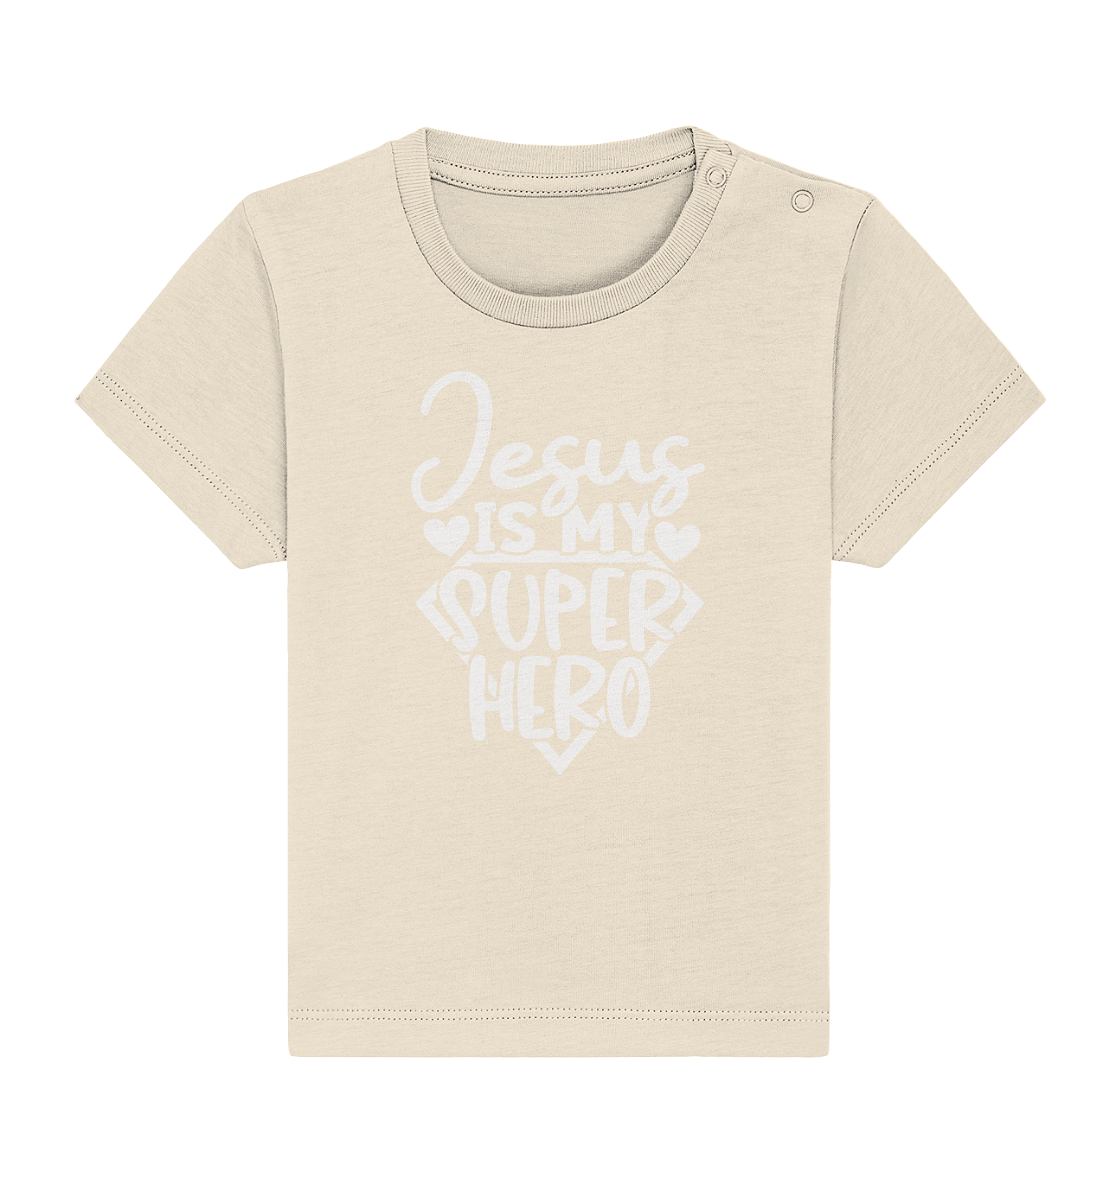 Jesus ist mein Superheld - Baby Organic Shirt